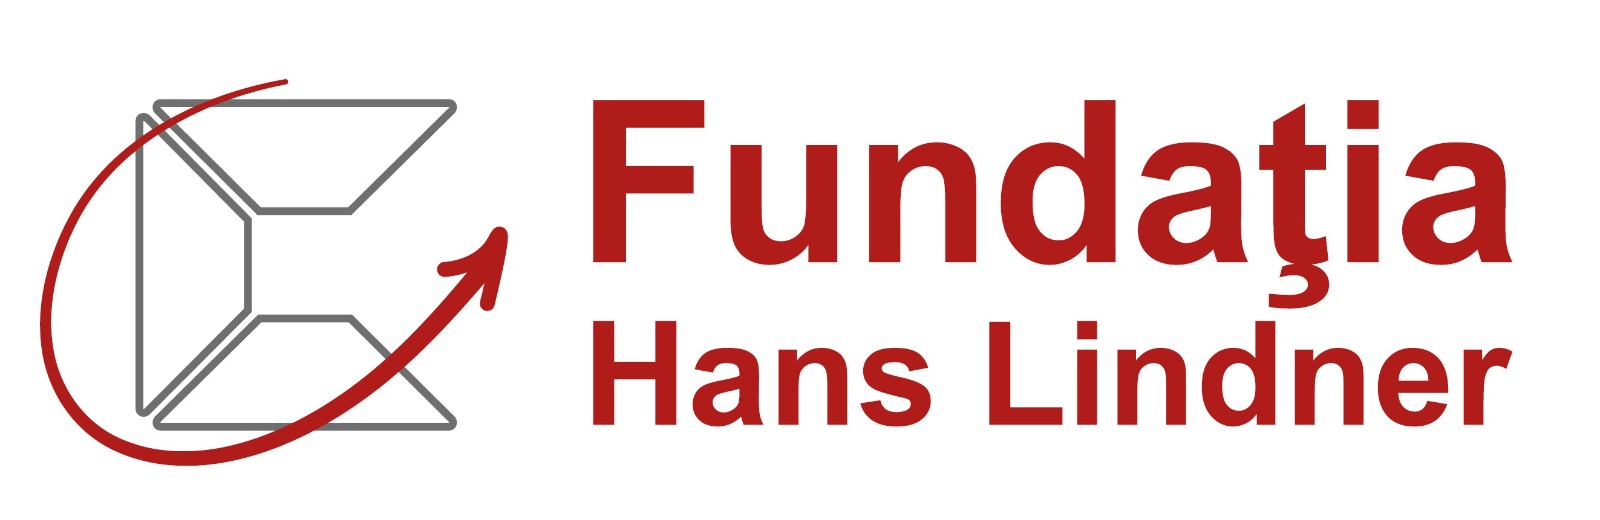 Hans-Lindner-Stiftung Logo